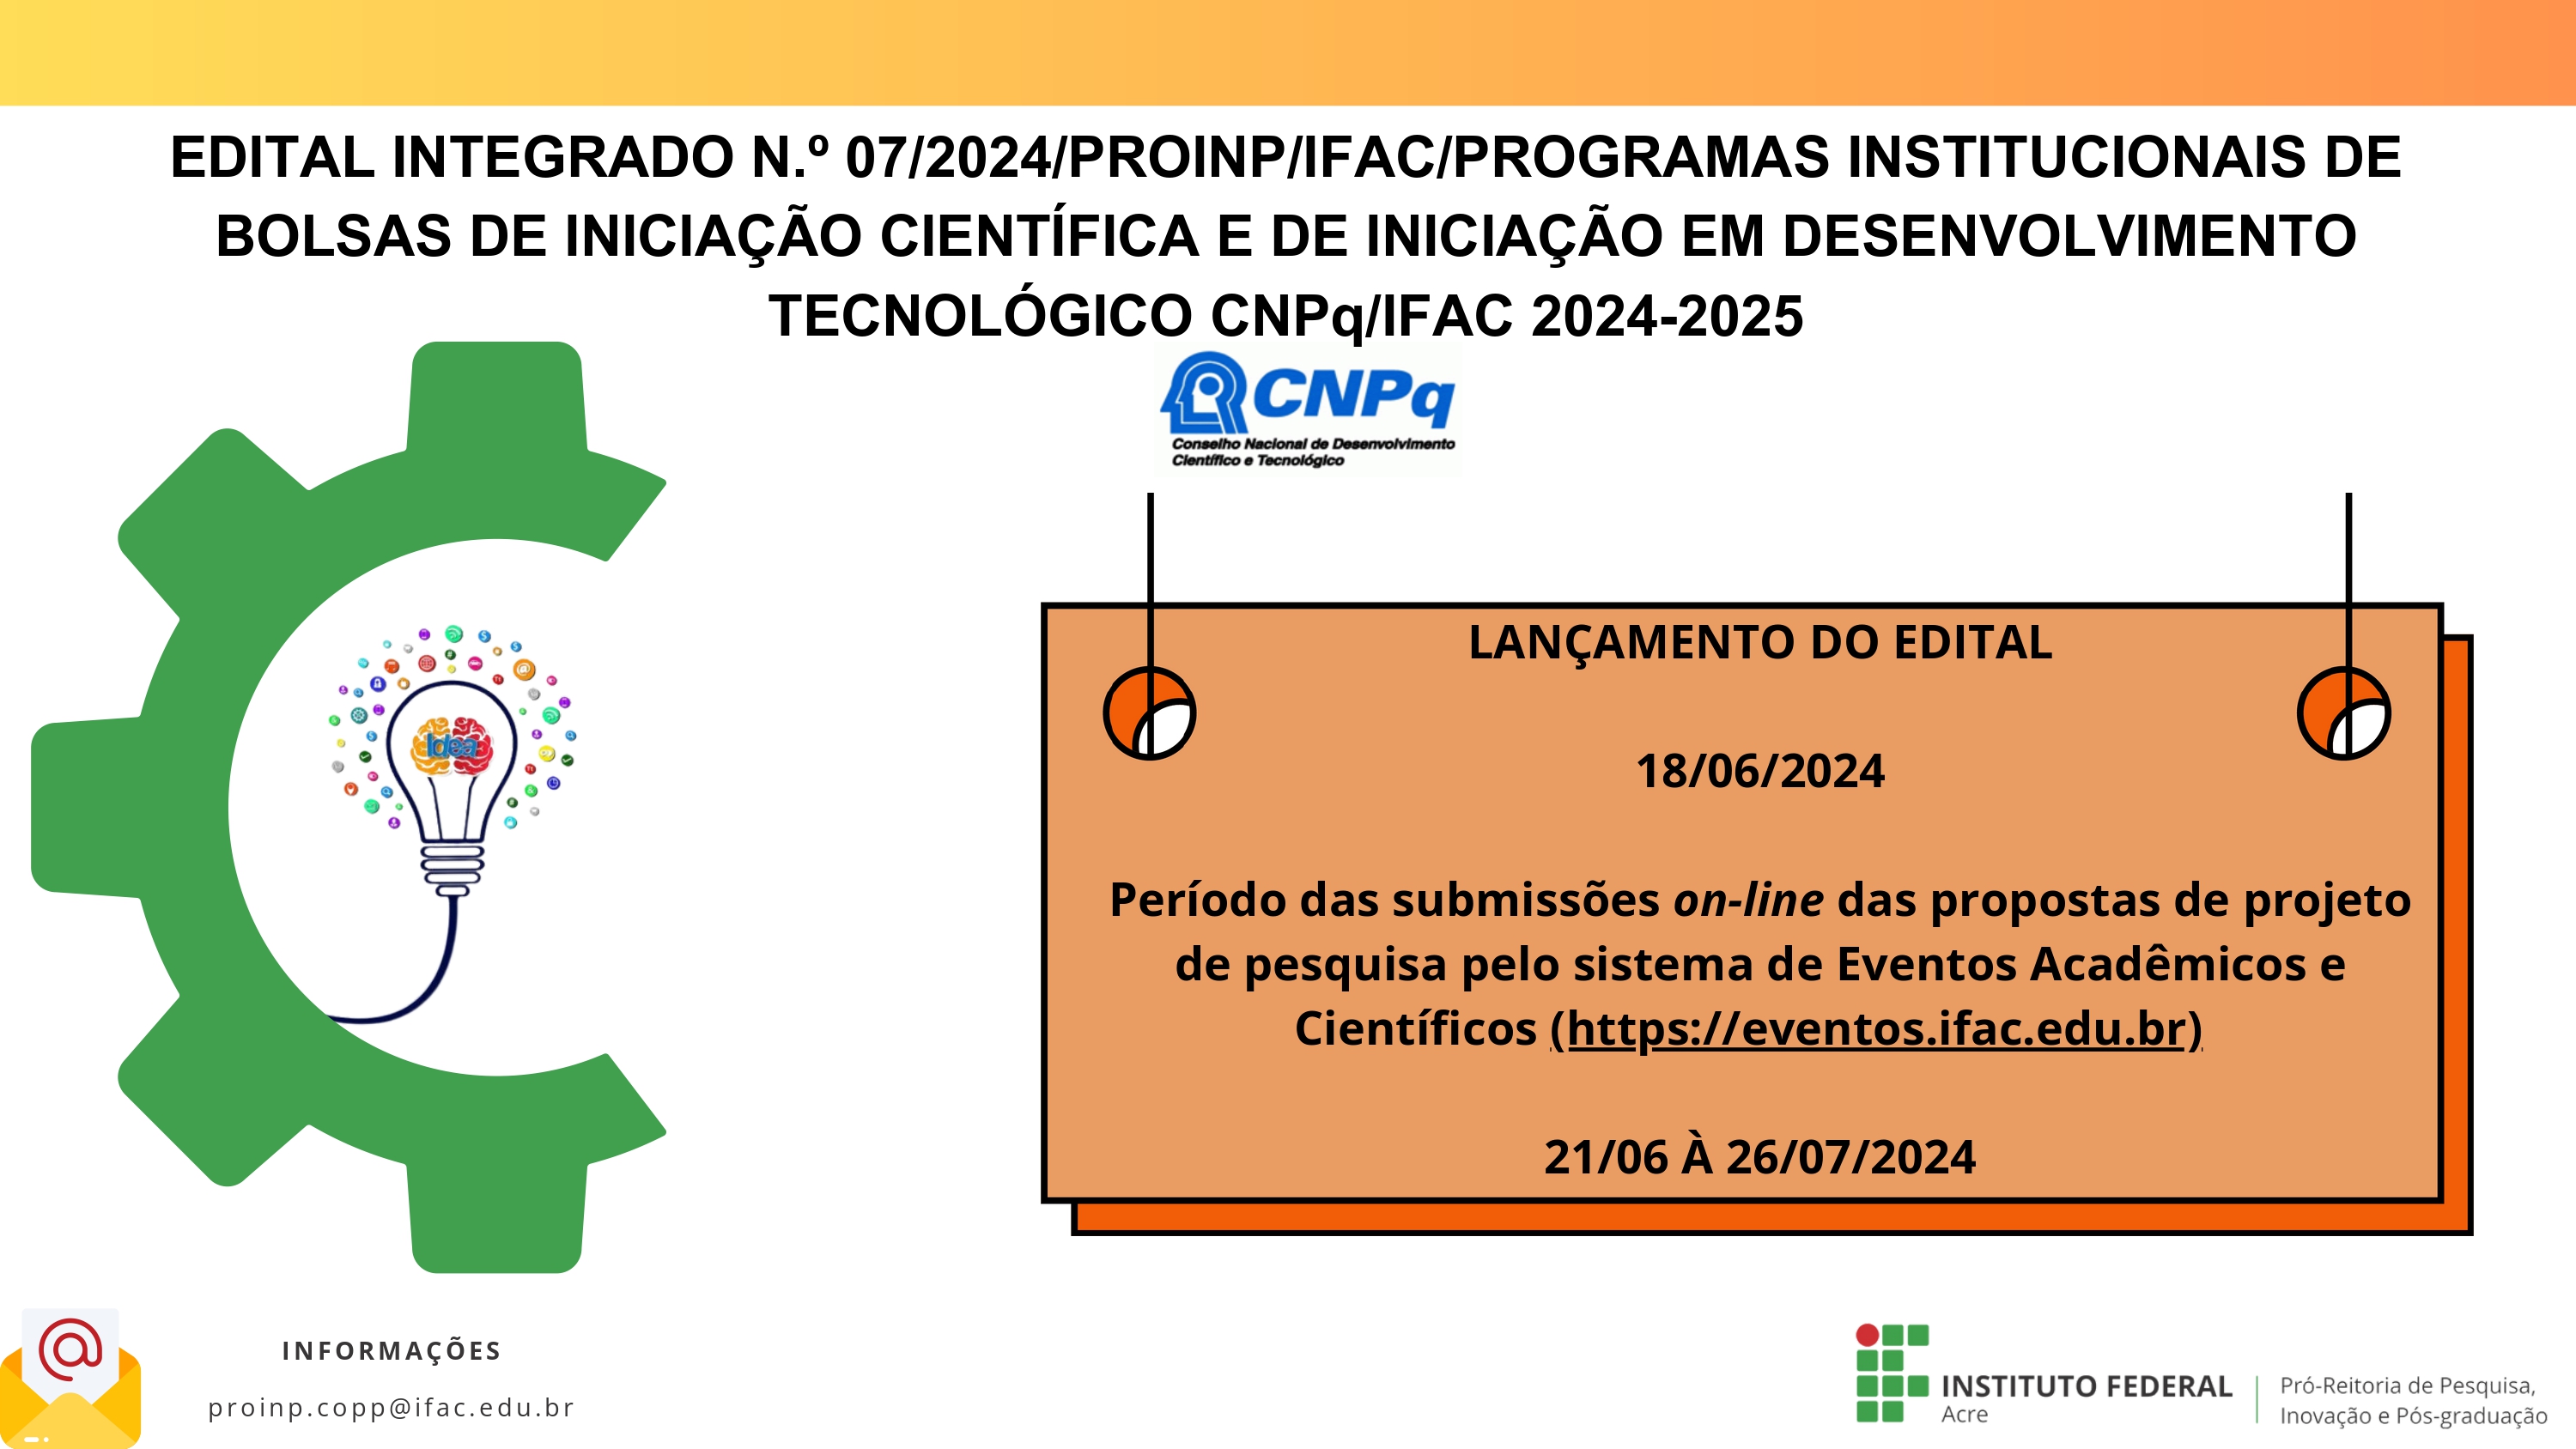 EDITAL INTEGRADO Nº 07/2024/PROINP/IFAC - PROGRAMAS INSTITUCIONAIS DE BOLSAS DE INICIAÇÃO CIENTÍFICA E DE INICIAÇÃO EM DESENVOLVIMENTO TECNOLÓGICO CNPq/IFAC 2024-2025